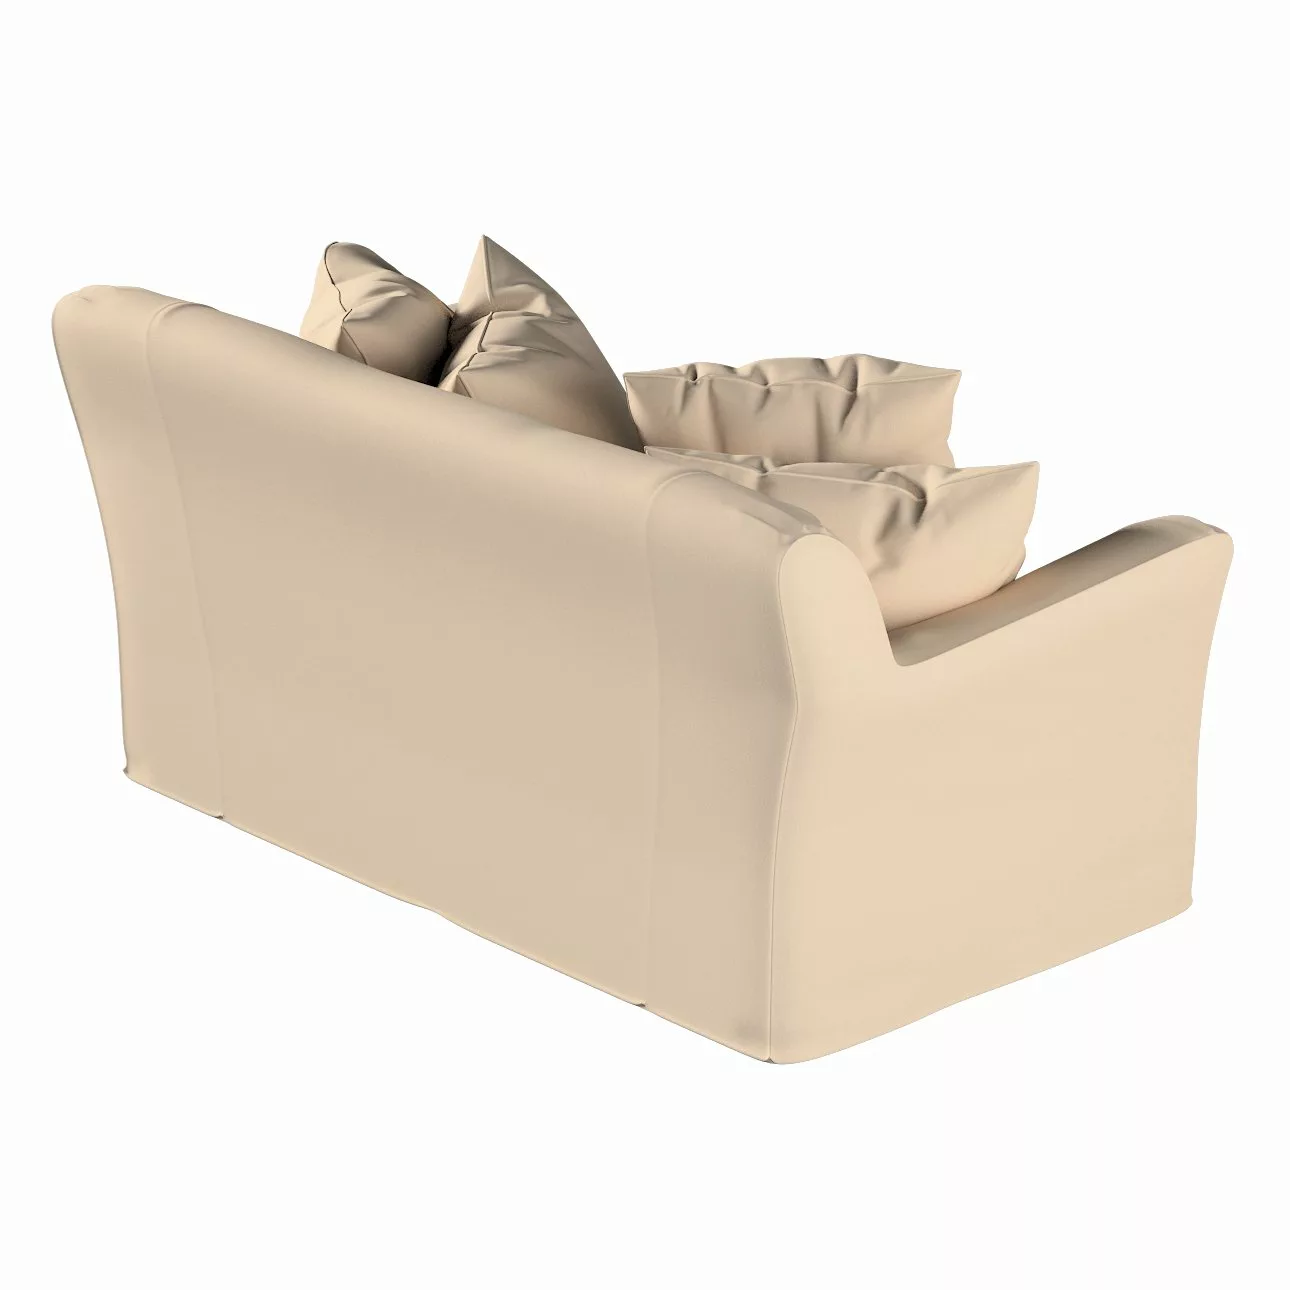 Bezug für Tomelilla 2-Sitzer Sofa nicht ausklappbar, creme-beige, Sofahusse günstig online kaufen